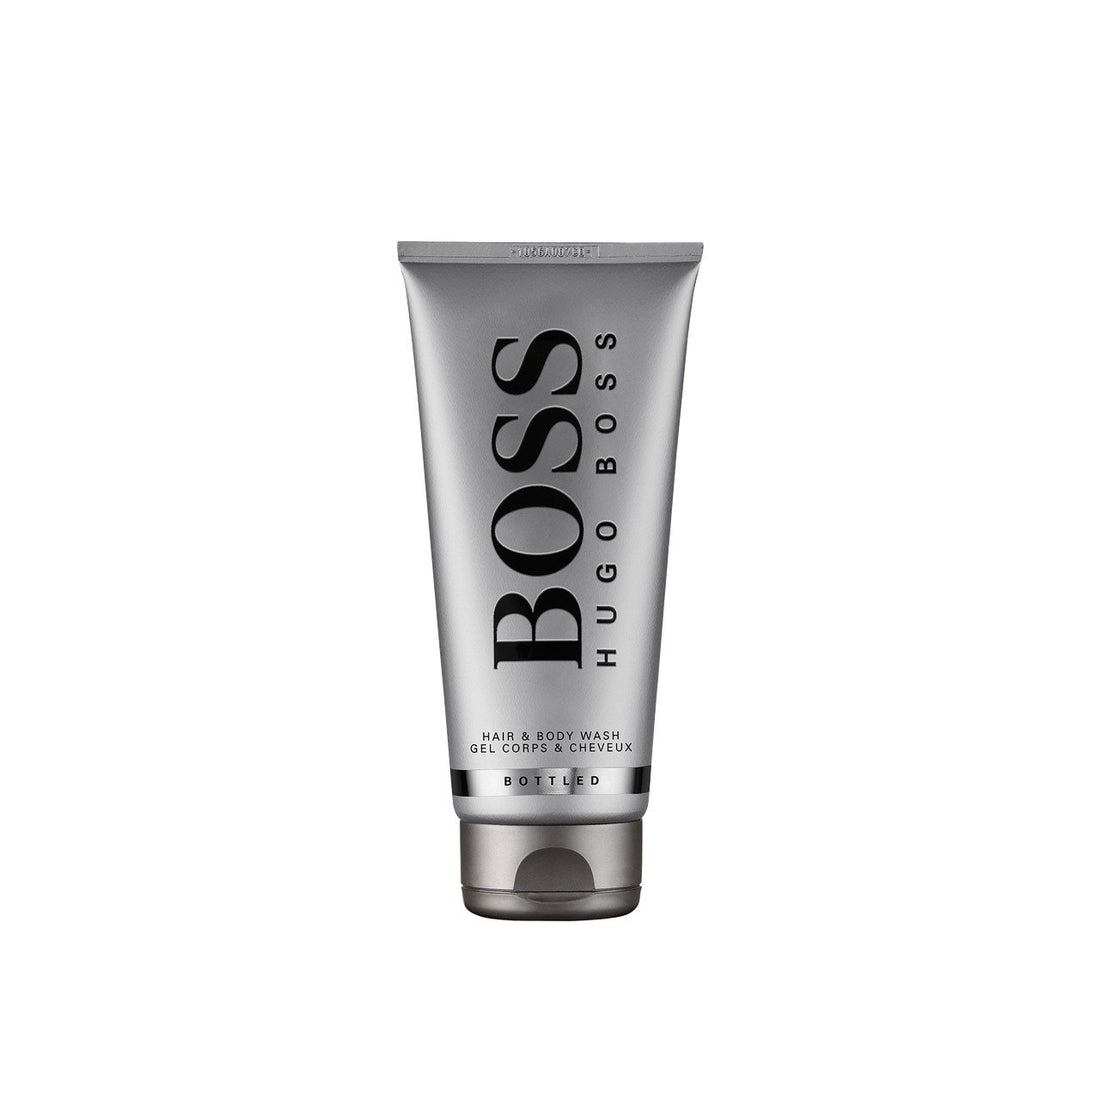 Hugo Boss Boss Bottled Hair &amp; Body Wash 200ml (6.76fl oz)